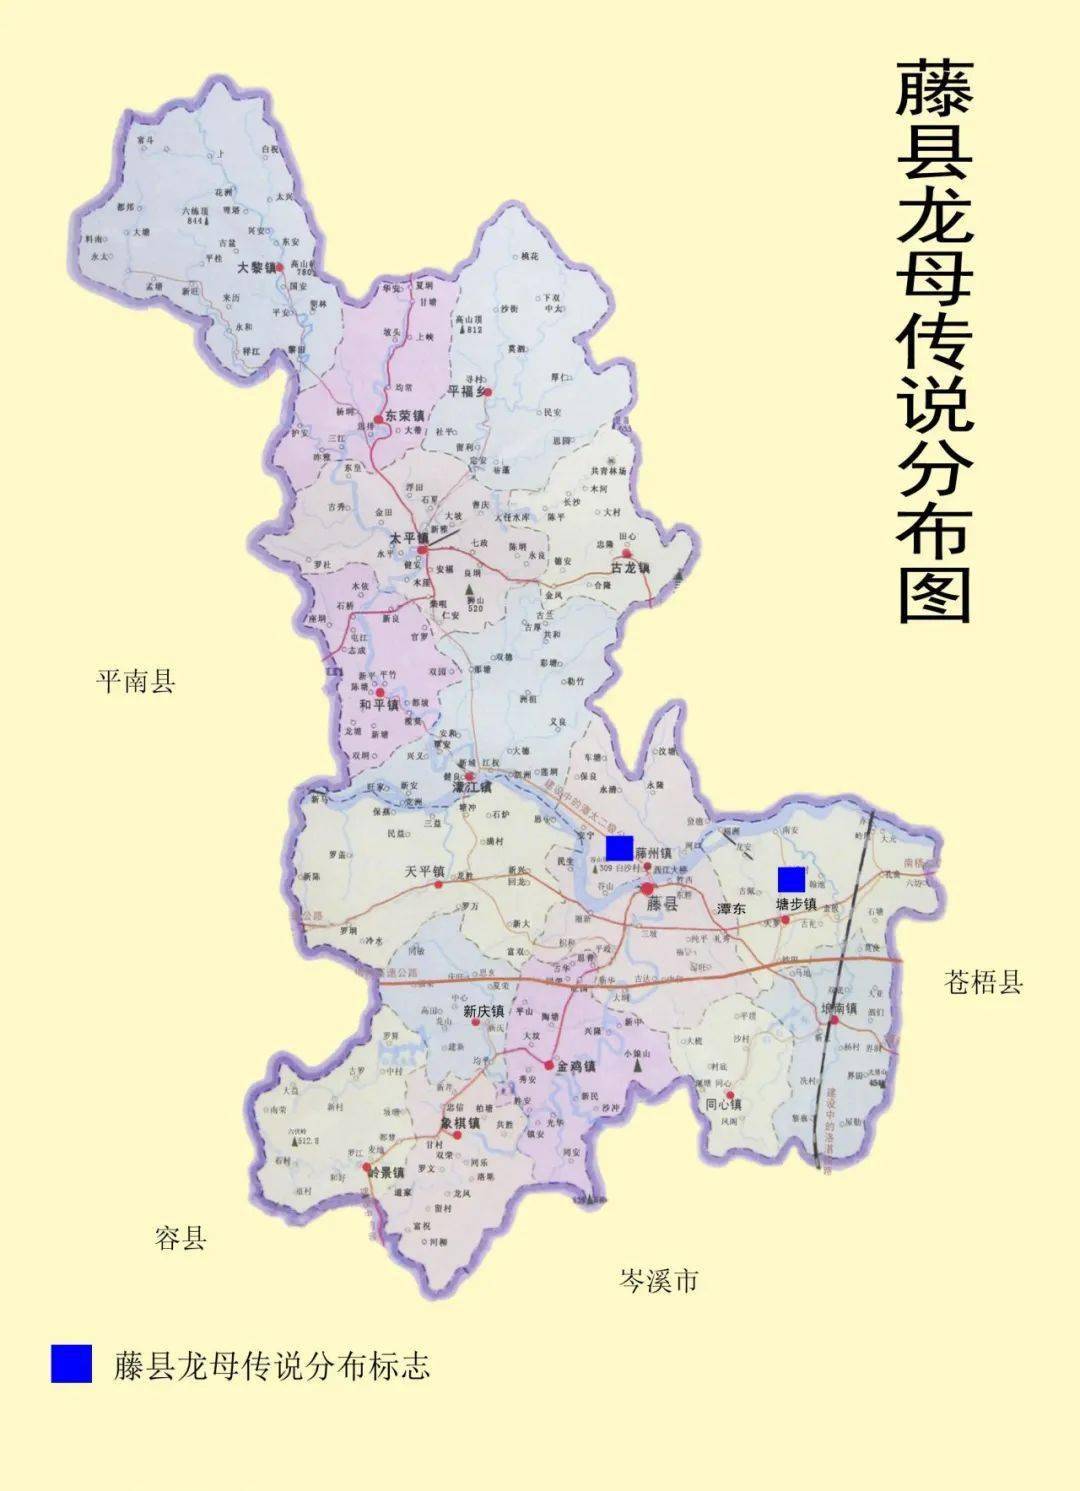 藤县位于广西梧州西部,境内水系较为发育.